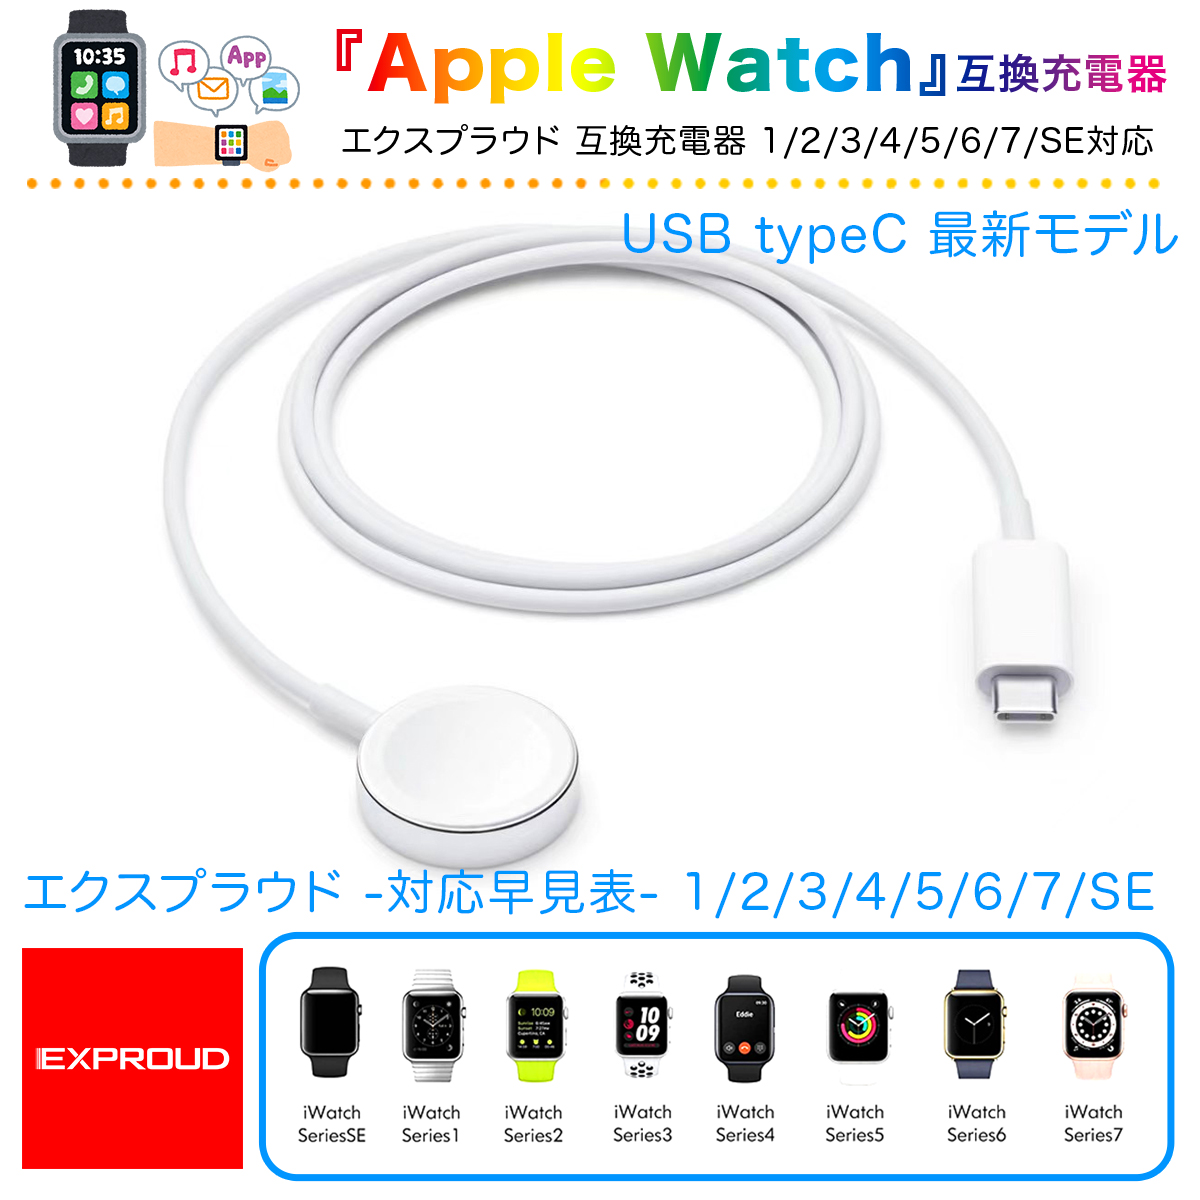 送料無料 Apple Watch 互換充電器 USB typeC 最新モデル SE 対応 置くだけ充電 急速充電 ホワイト 1m EXPROUD EX502002